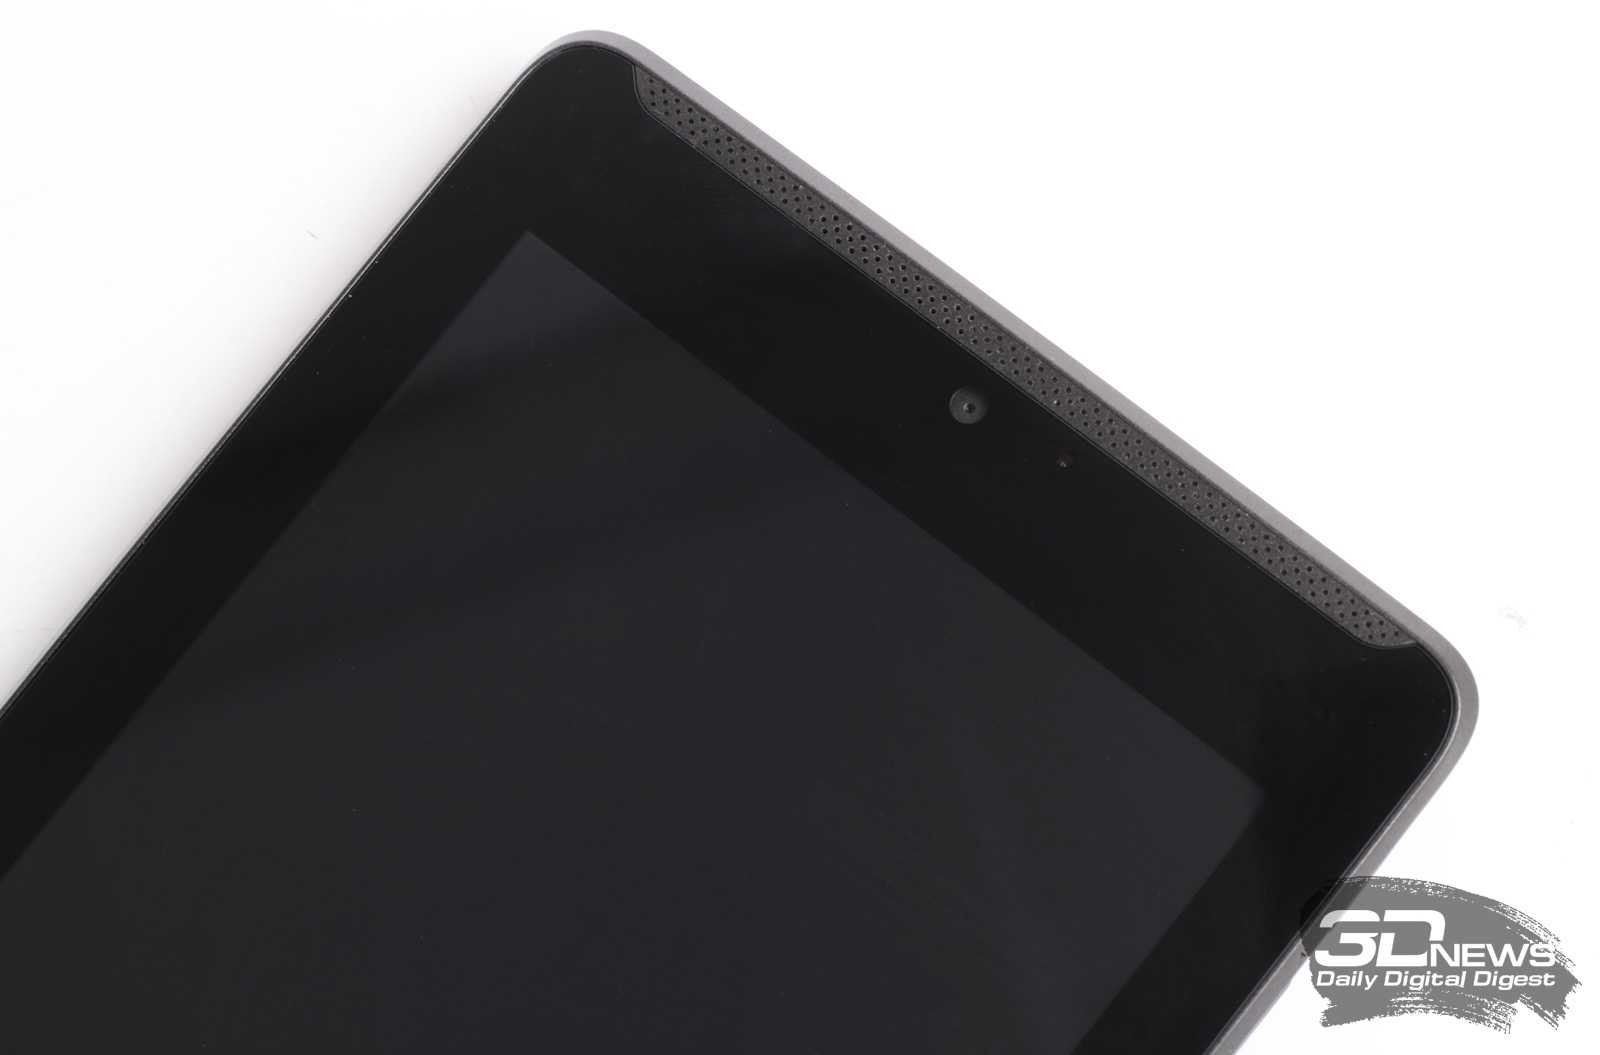 Планшет asus fonepad 7 8 гб wifi 3g черный — купить, цена и характеристики, отзывы